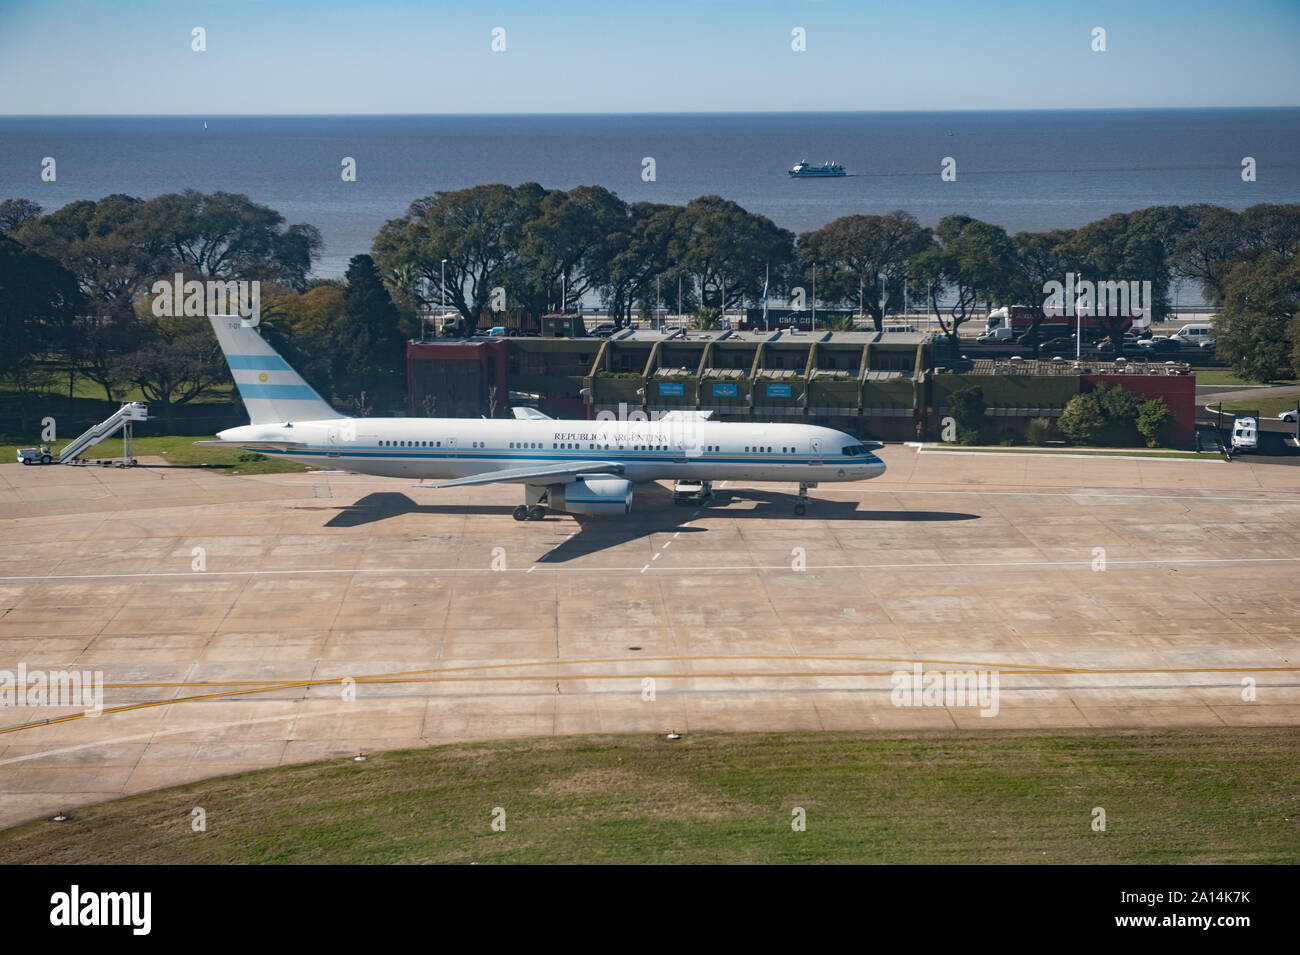 Buenos Aires, Argentinien - 16. August 2013: Das Flugzeug durch die Präsidentin Cristina Kirchner zu Flug von Buenos Aires nach Rio Gallegos verwendet seit 2003 Stockfoto